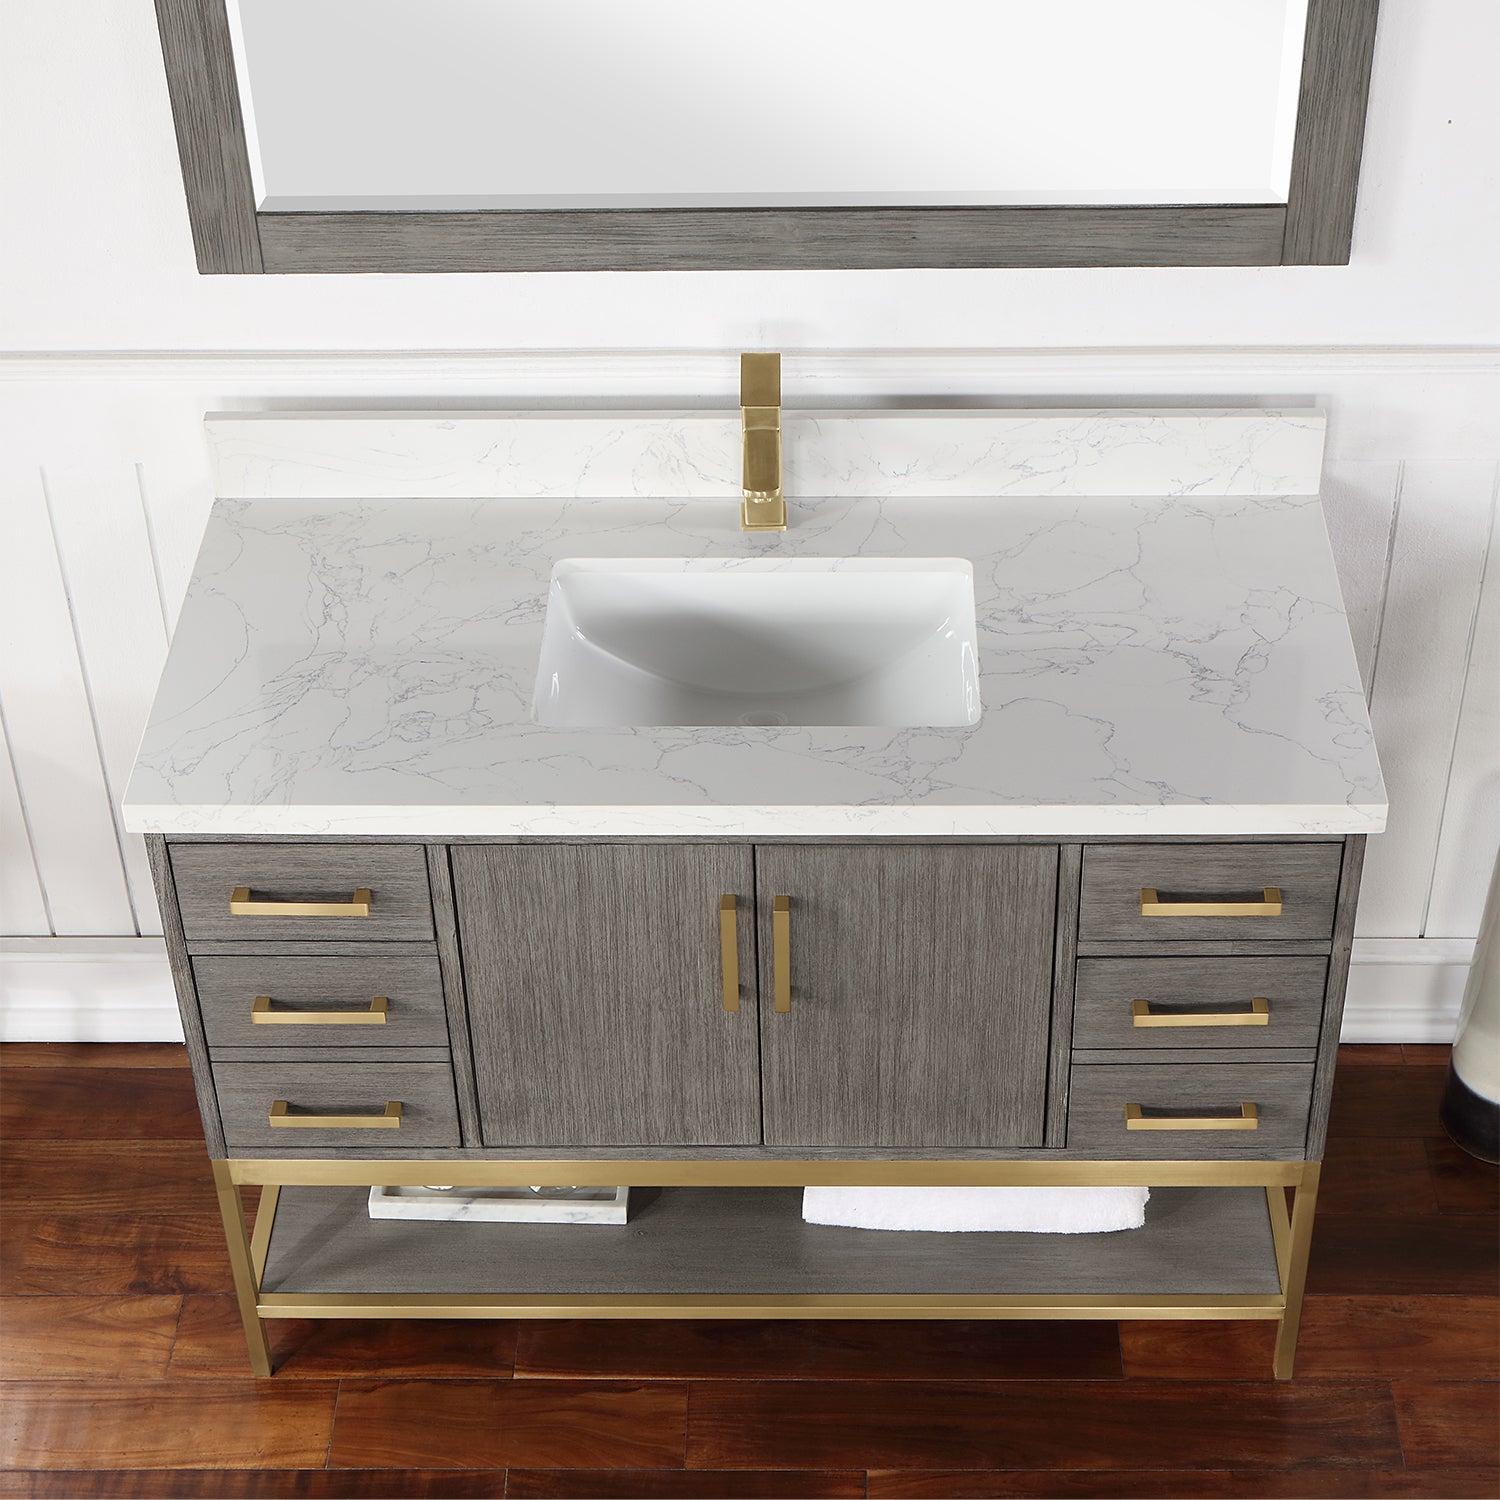 Wildy 48" Single Bathroom Vanity Set with Grain White Composite Stone Countertop